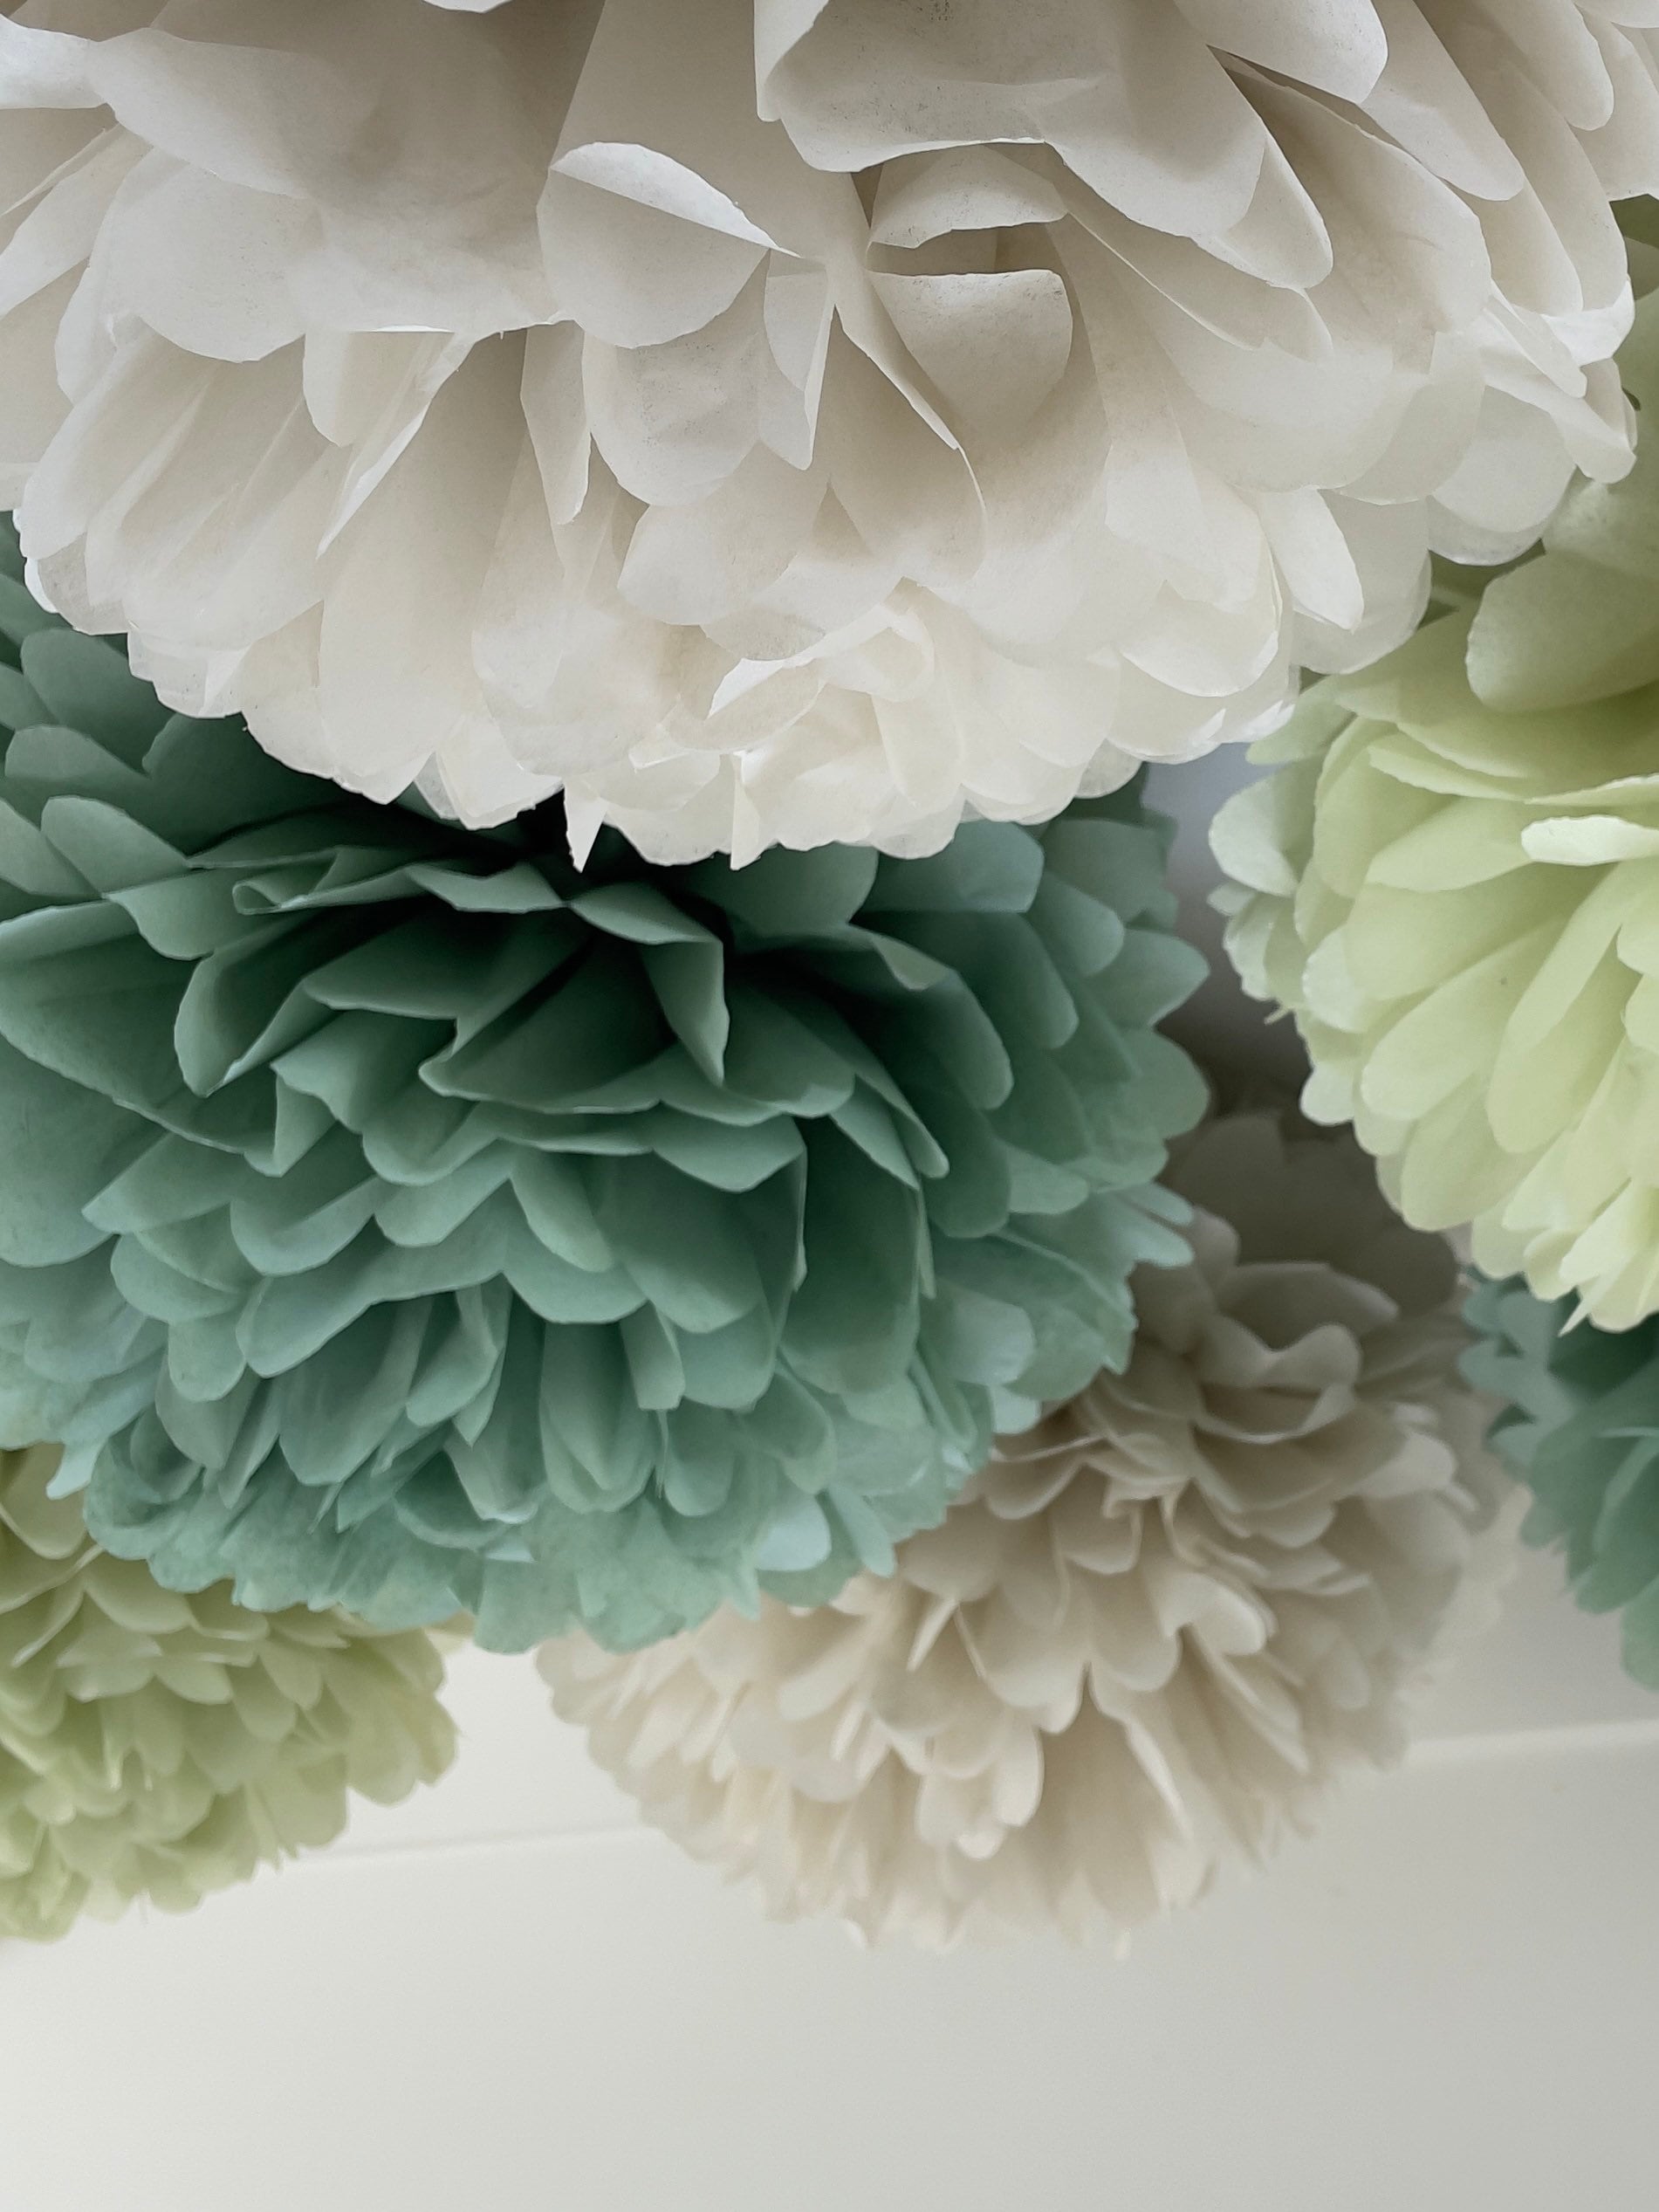 29 Colors avilable!! Giant tissue paper pom pom flowers birthday